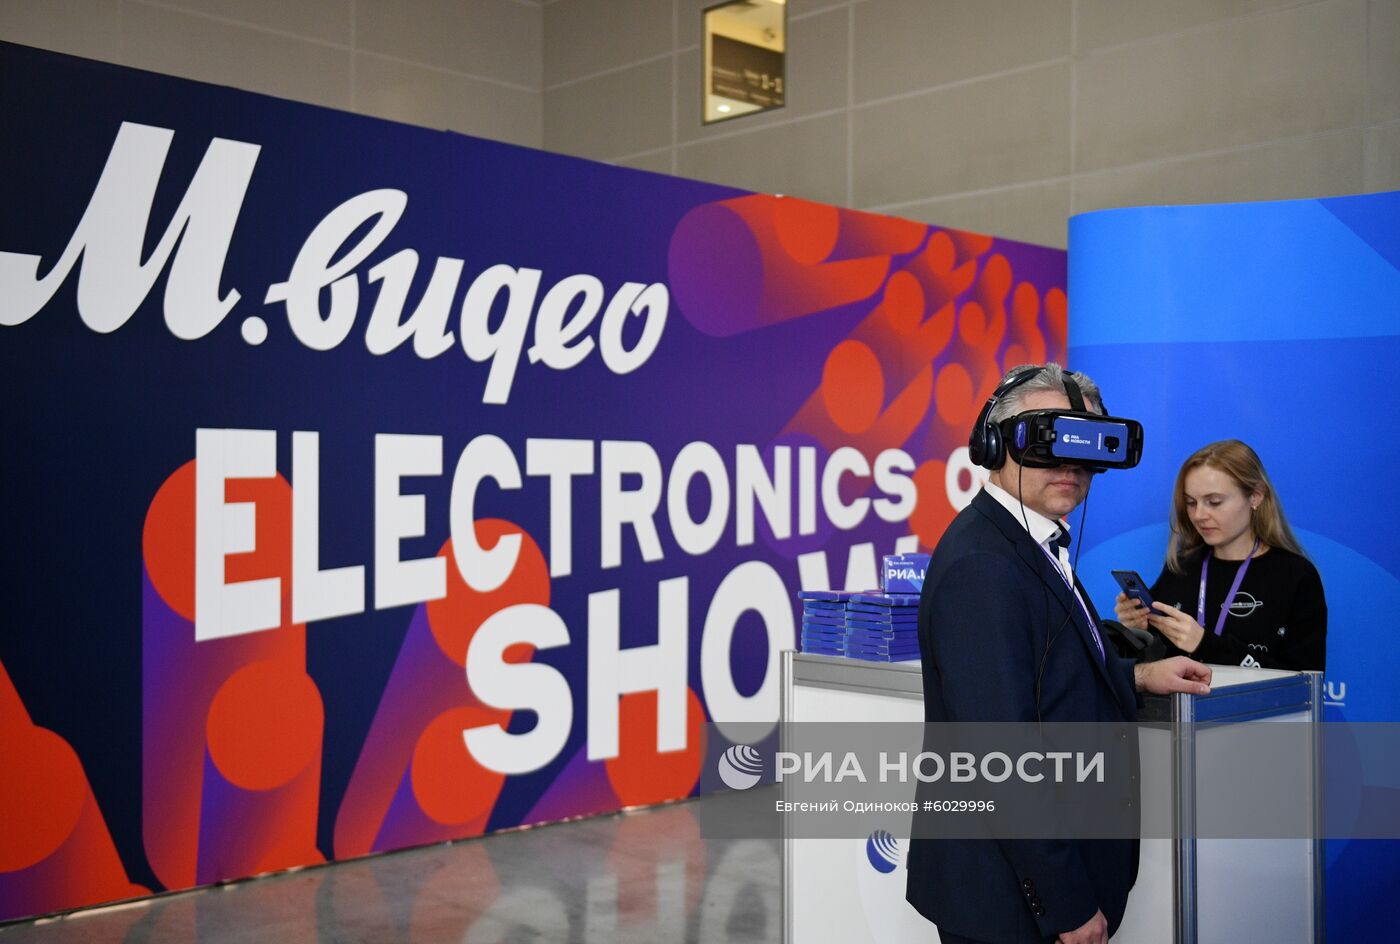 Выставка "М.Видео Electronics Show 2019"